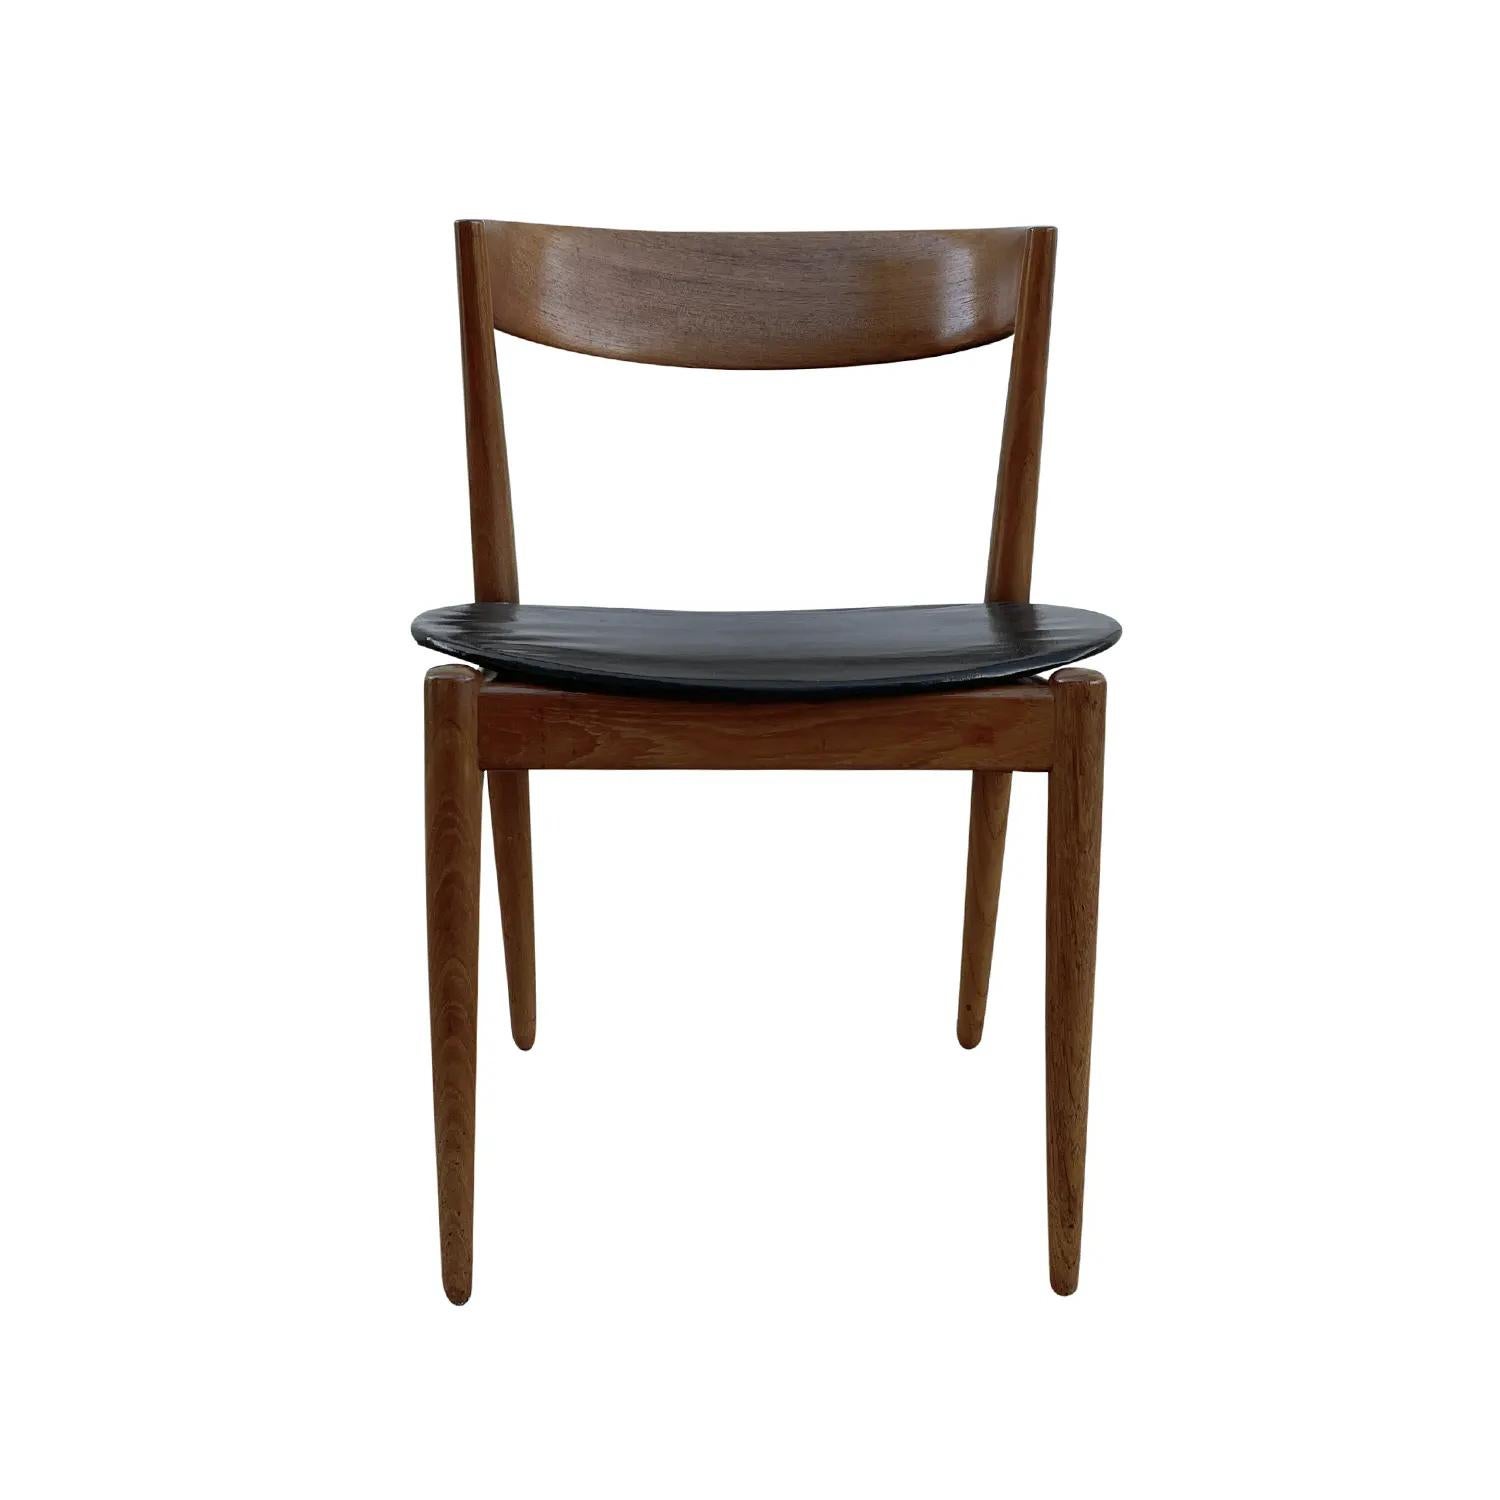 Chaise danoise vintage de style moderne du milieu du siècle, en teck poli travaillé à la main, en bon état. Le fauteuil d'angle scandinave est doté d'un dossier mince et incurvé, reposant sur quatre pieds en bois. Le revêtement du siège est en